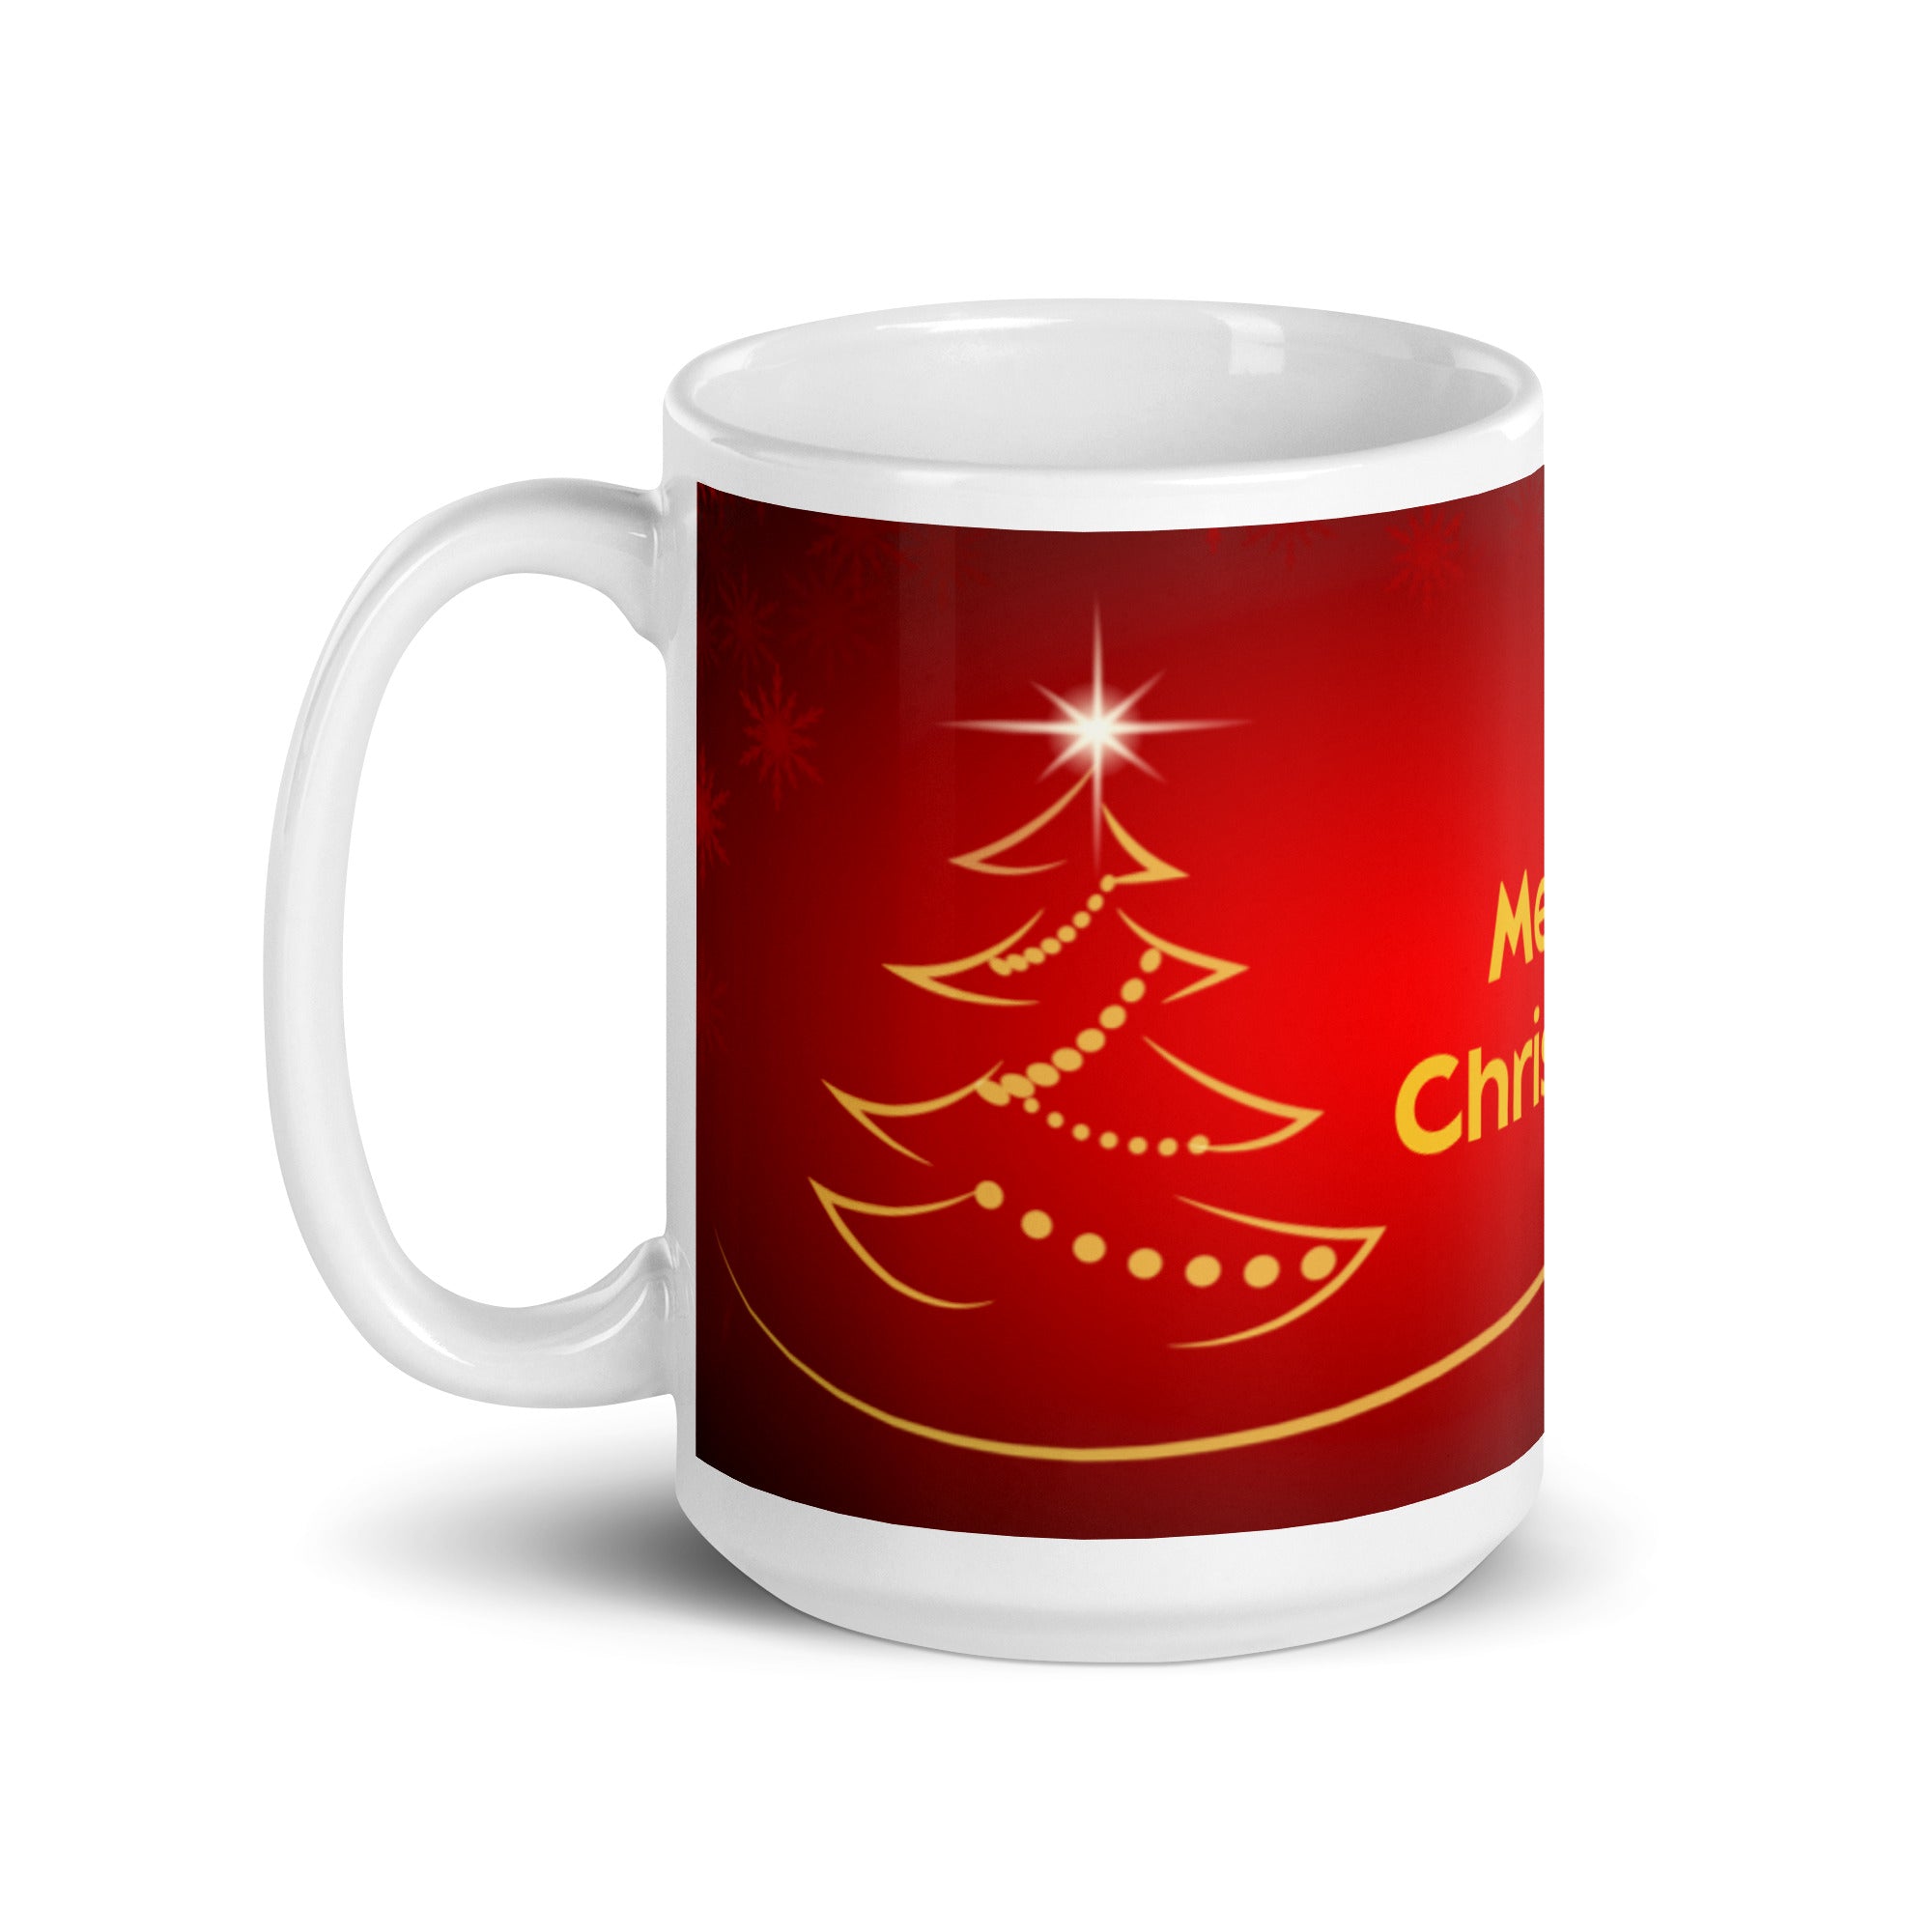 Merry Christmas Glossy Mug